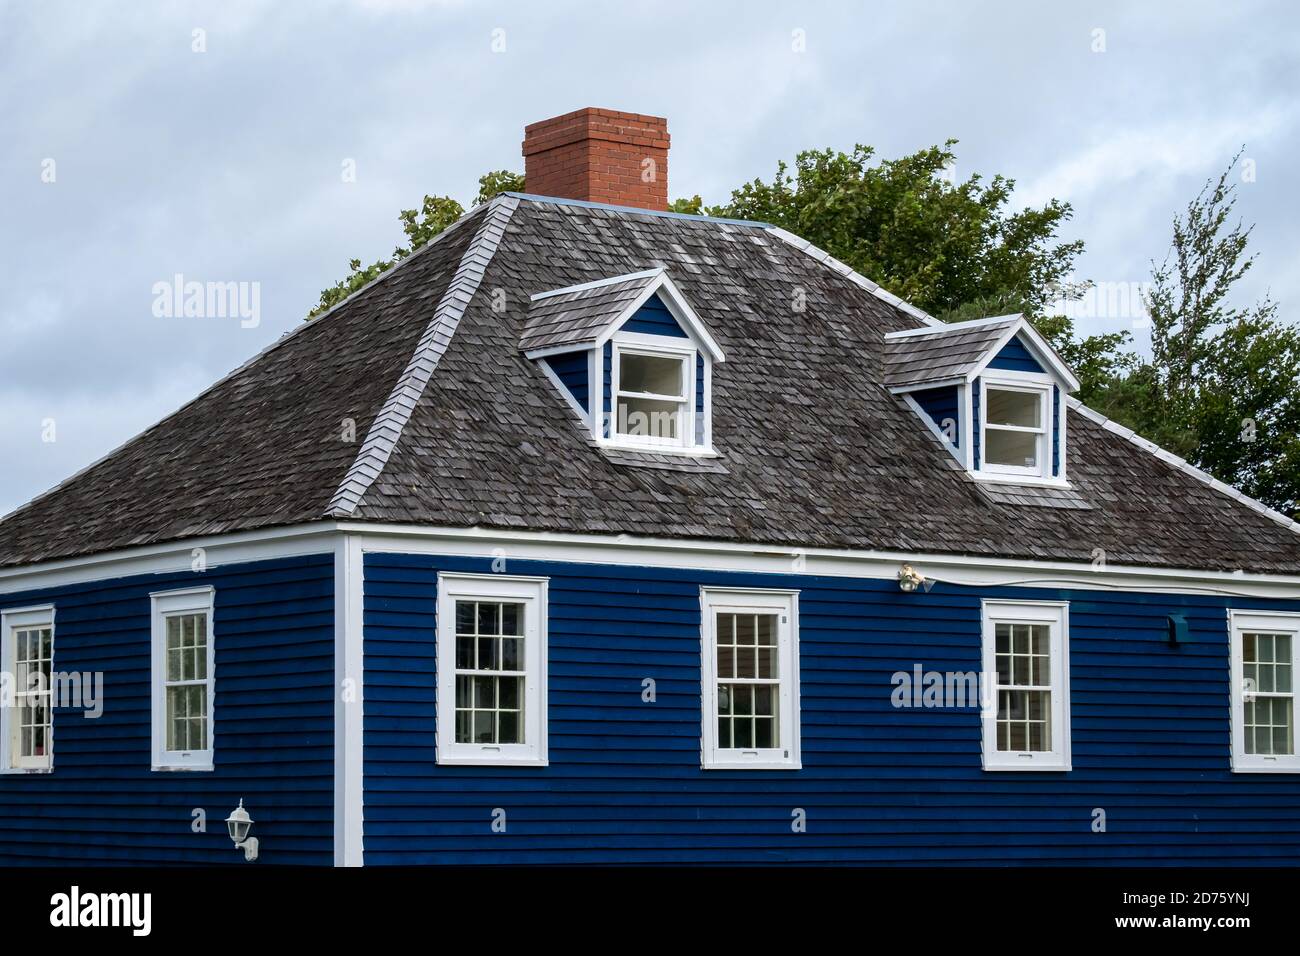 Tetto vintage hip con due dormitori, tetto in cedro, camino in mattoni rossi, pannello di copertura blu, finestre doppie appese, e rifiniture bianche sull'edificio. Foto Stock